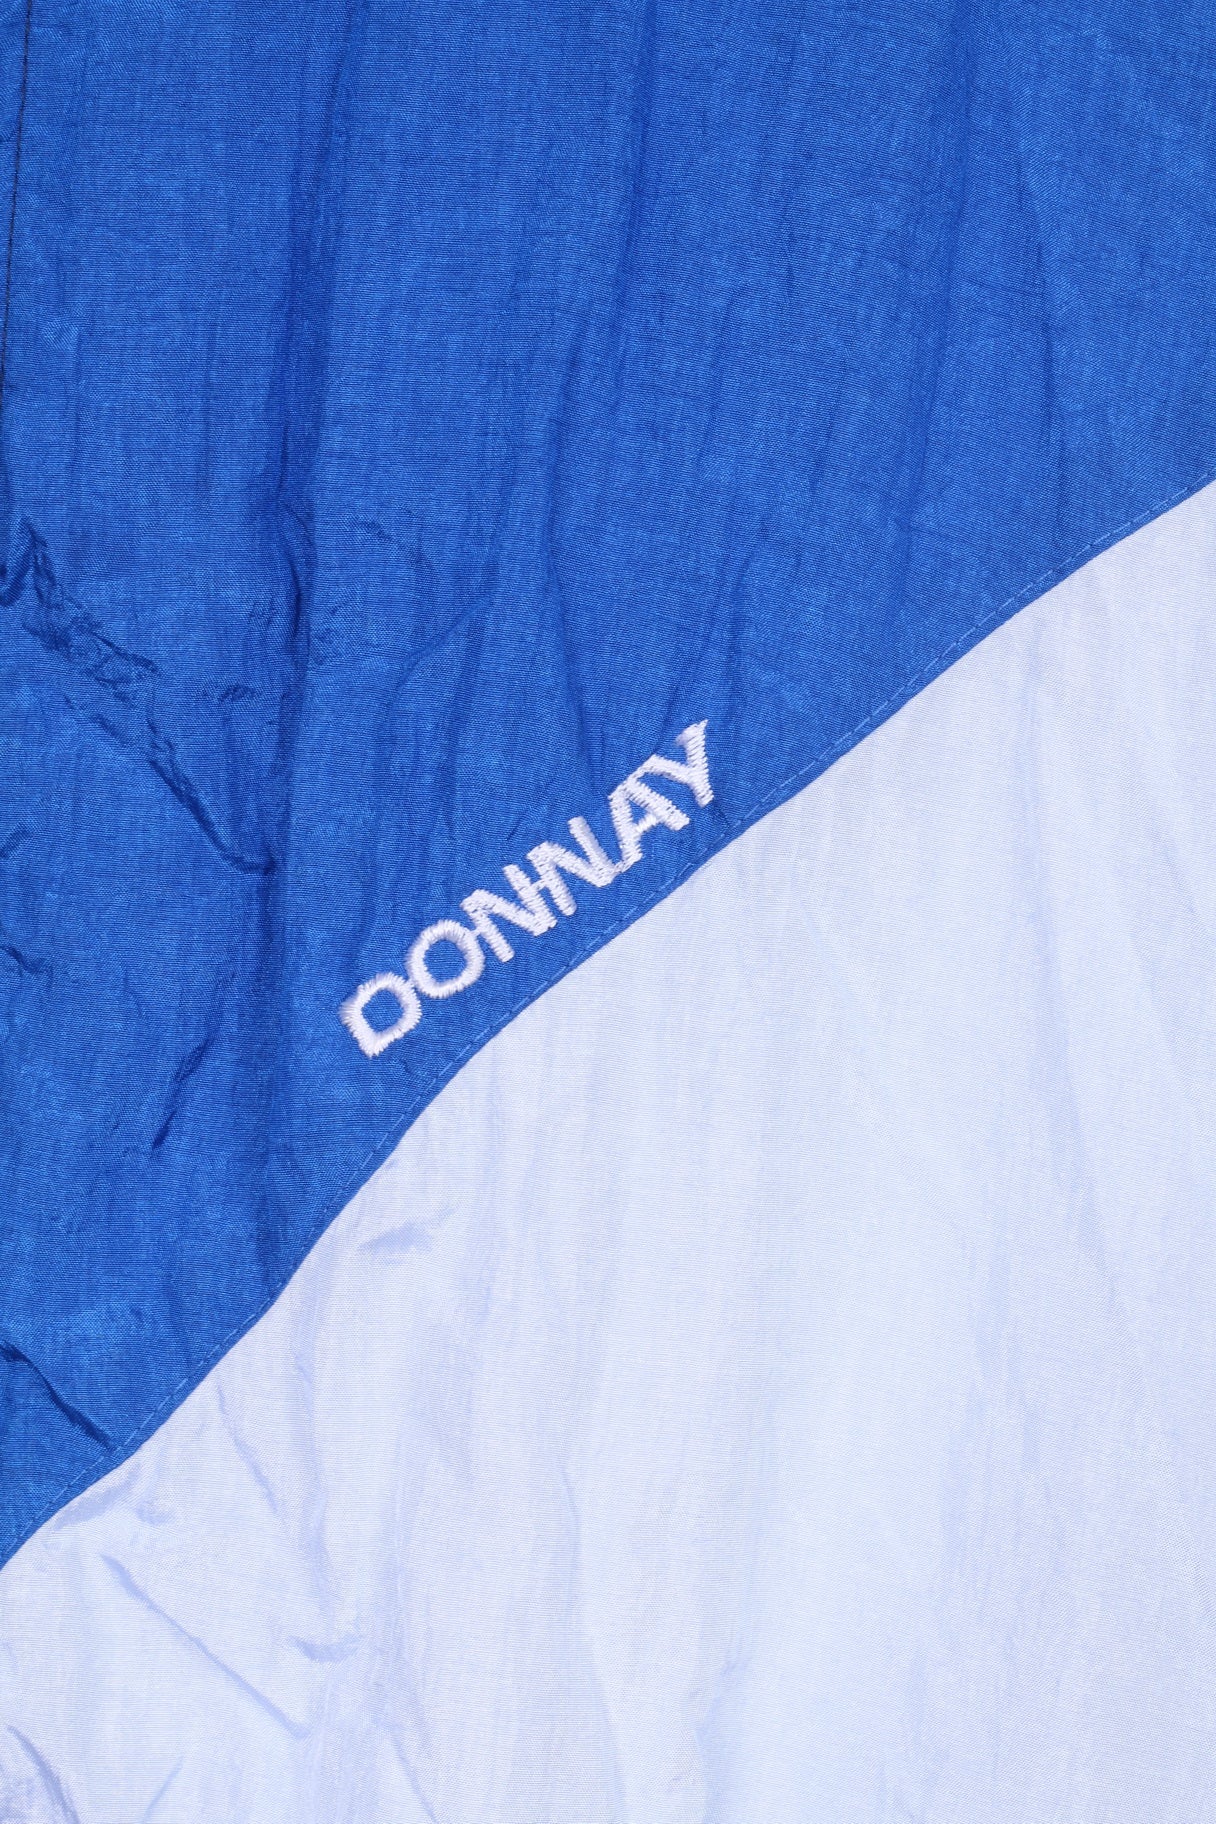 Donnay Mens M Jacket Blue Training Lightweight Sportswear Festival Trilobal Nylon Waterproof Vintage